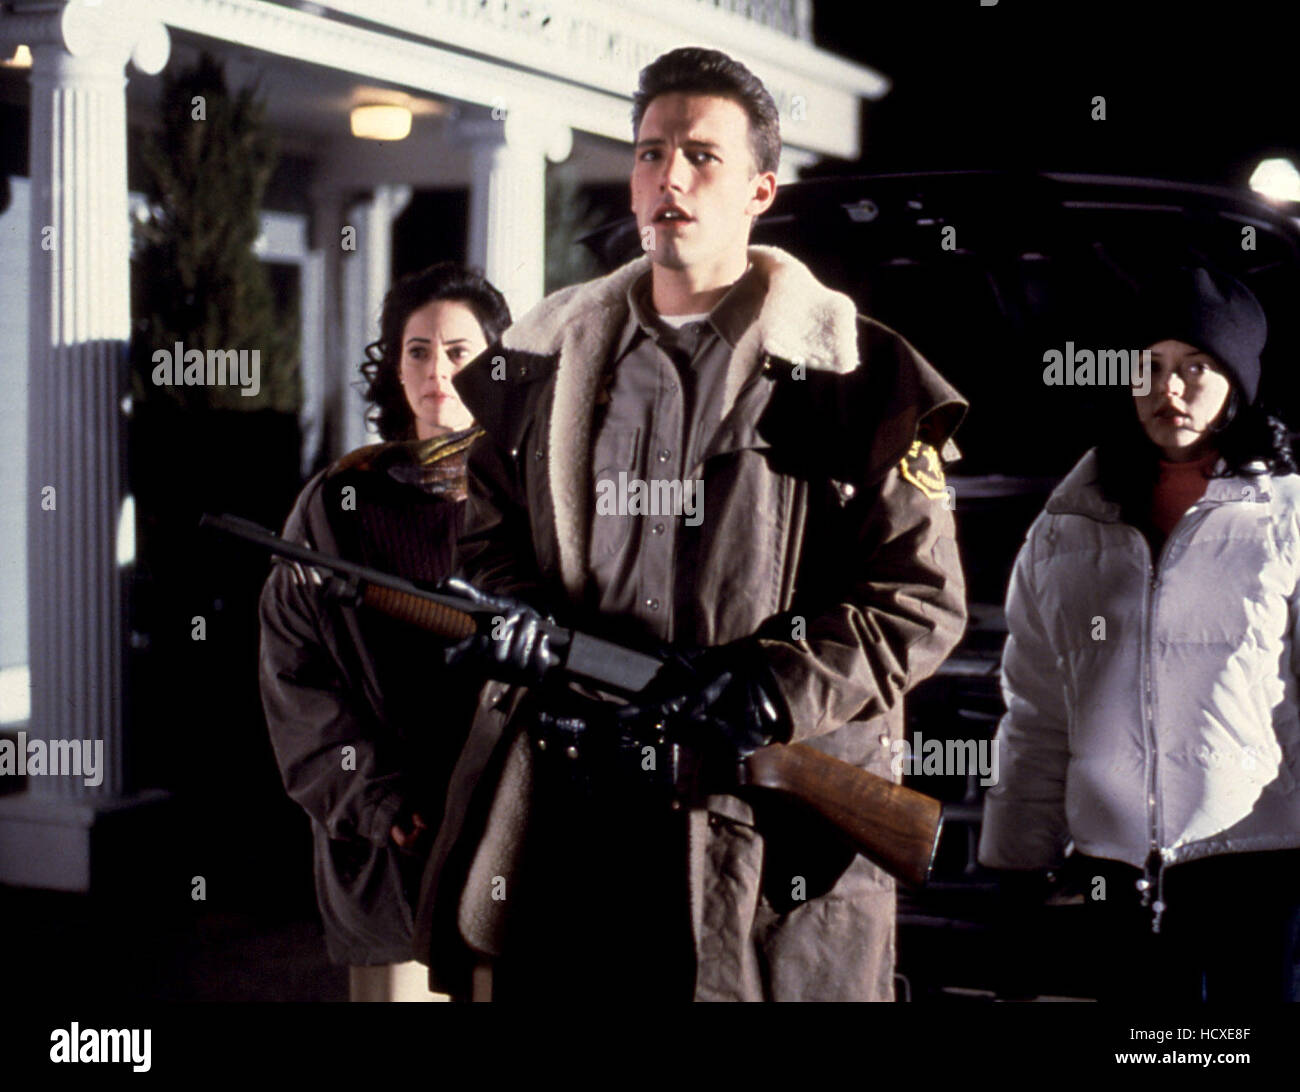 PHANTOMS, Joanna Going, Ben Affleck, Rose McGowan, 1998 Stock Photo - Alamy